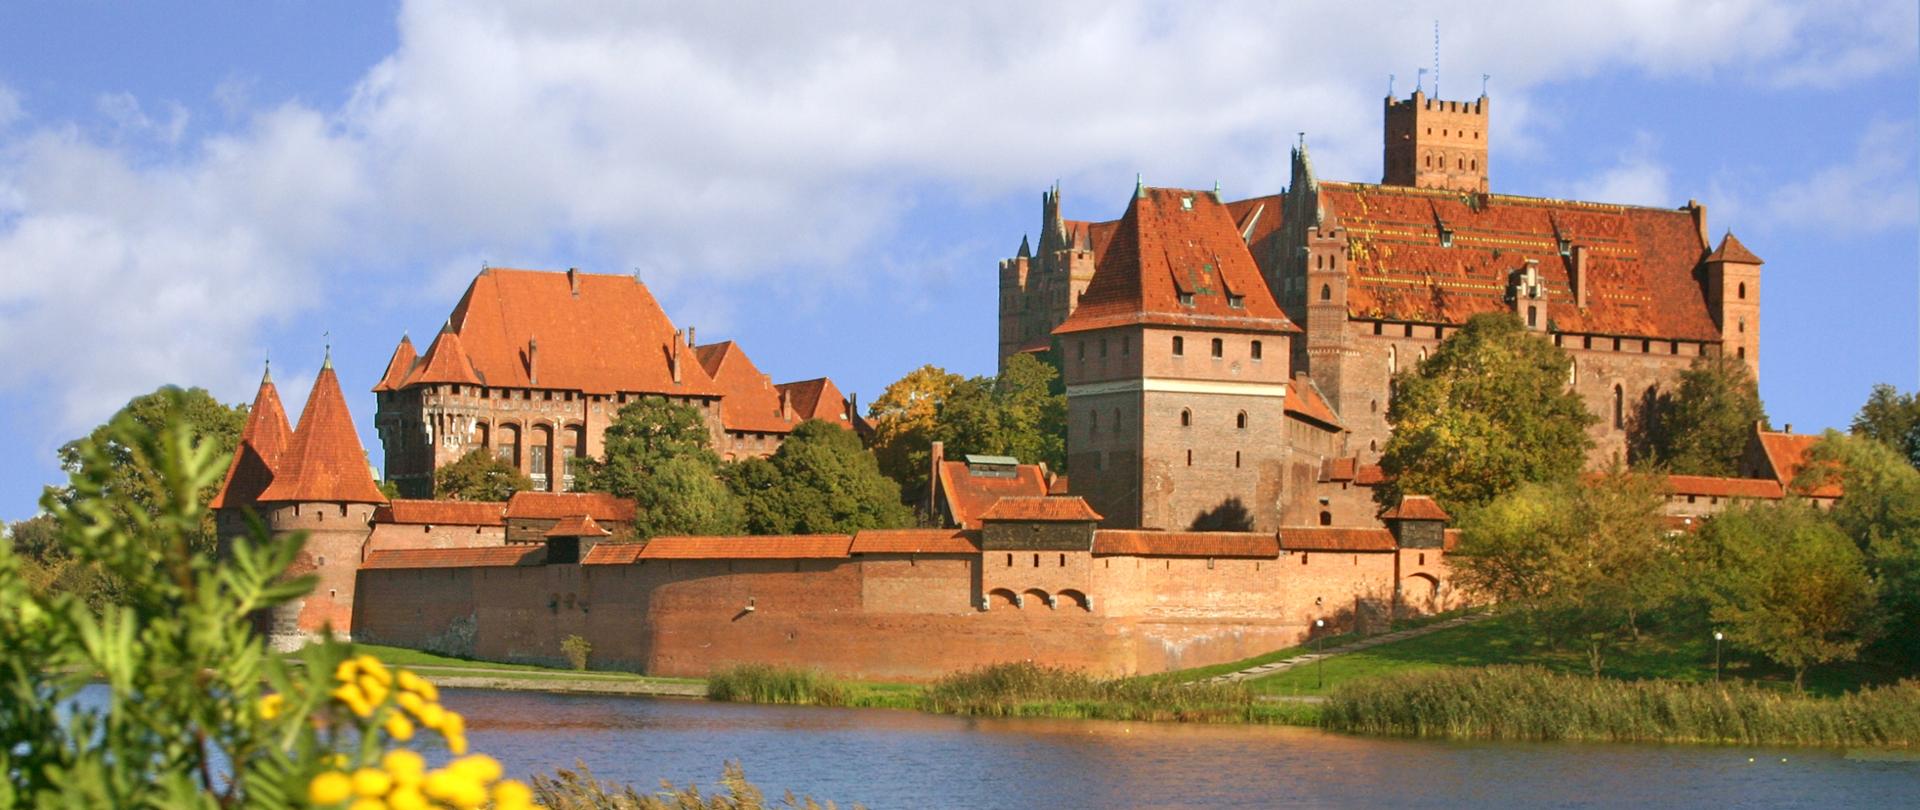 Zamek w Malborku, fot. Lech Okoński